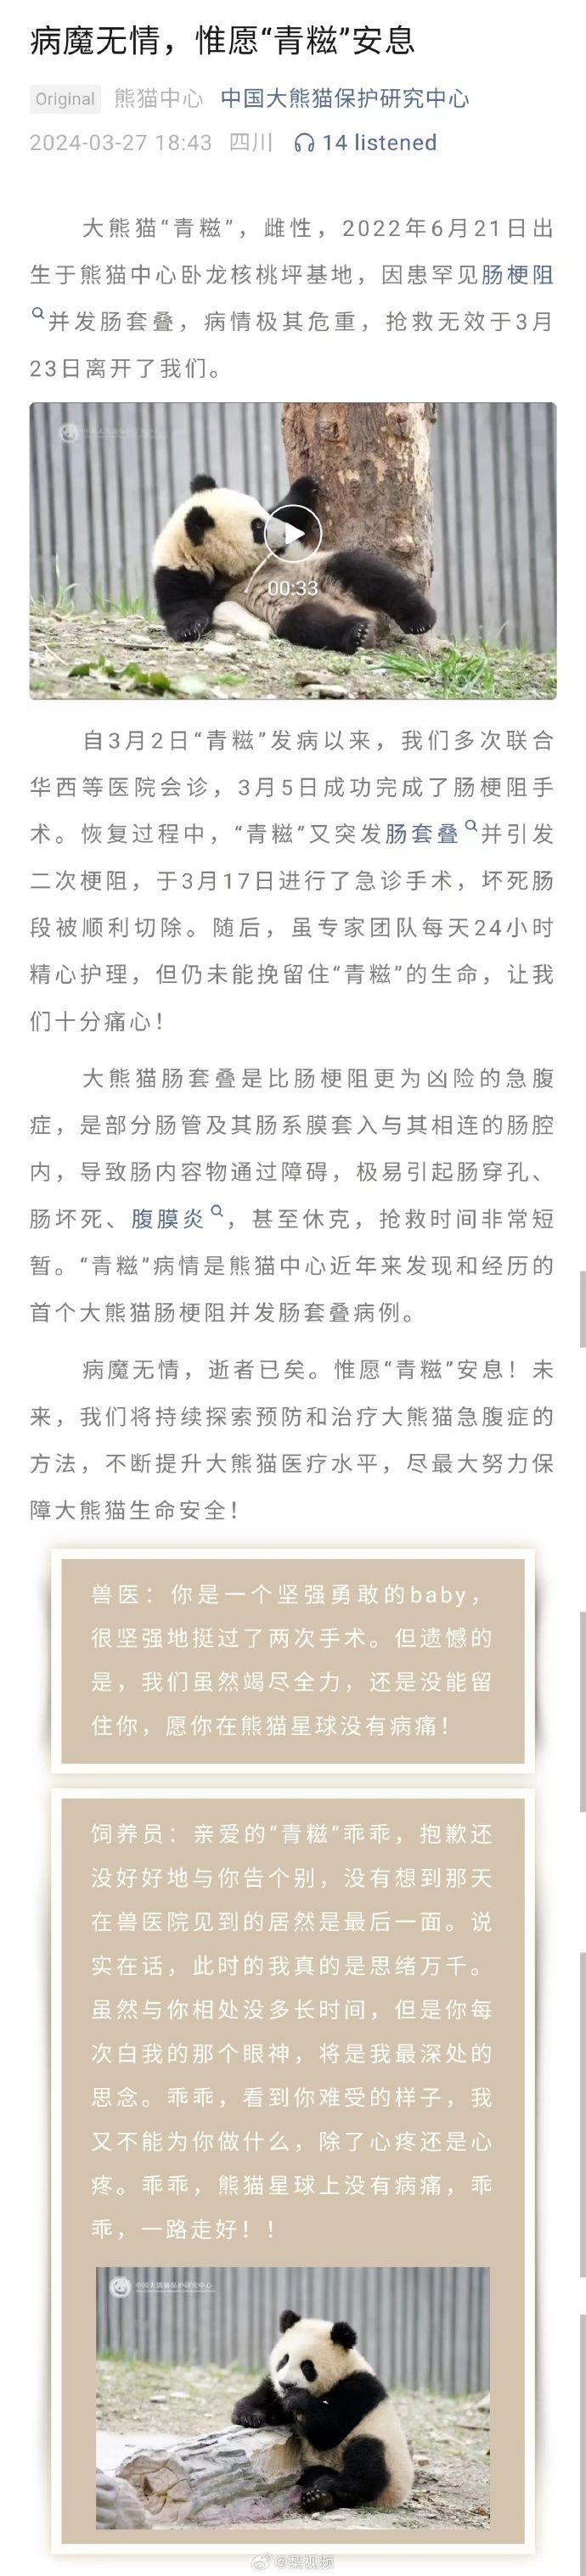 「中國大熊貓保護研究中心」微信公號消息。